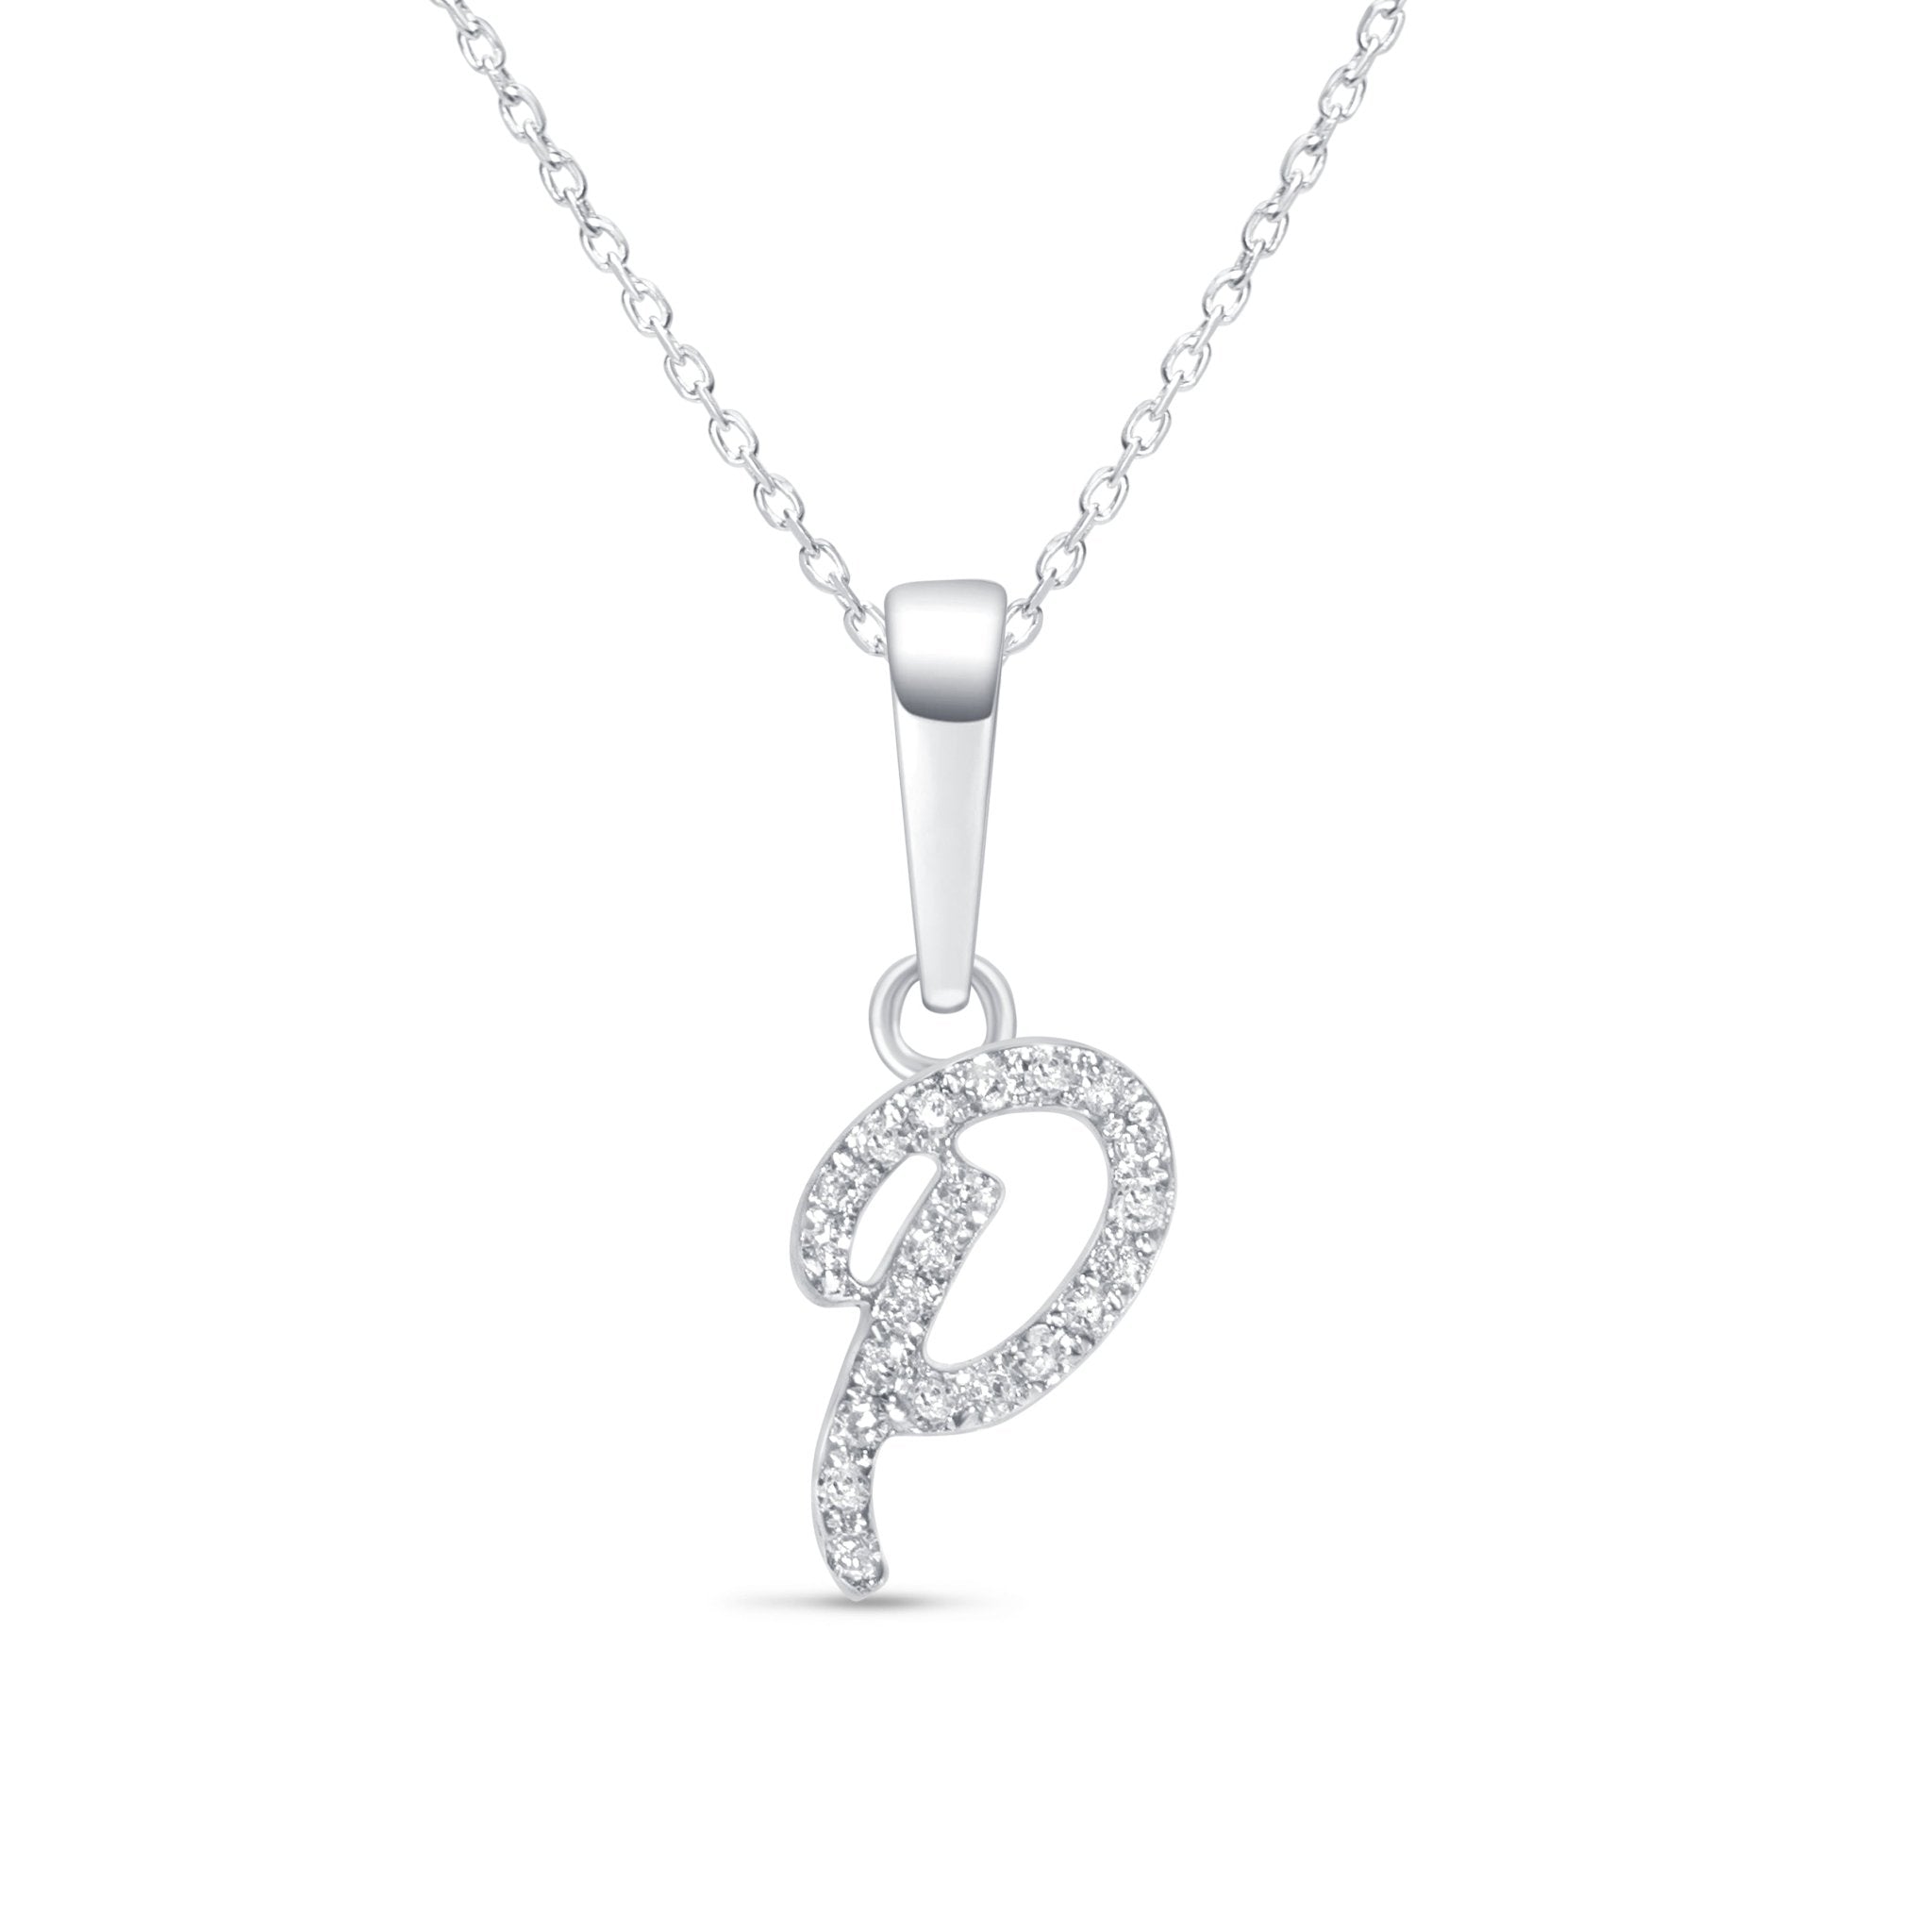 Cursive Diamond Initial Necklace - P Necklaces Estella Collection #product_description# 18557 14k Diamond Gemstone #tag4# #tag5# #tag6# #tag7# #tag8# #tag9# #tag10# 14k White Gold